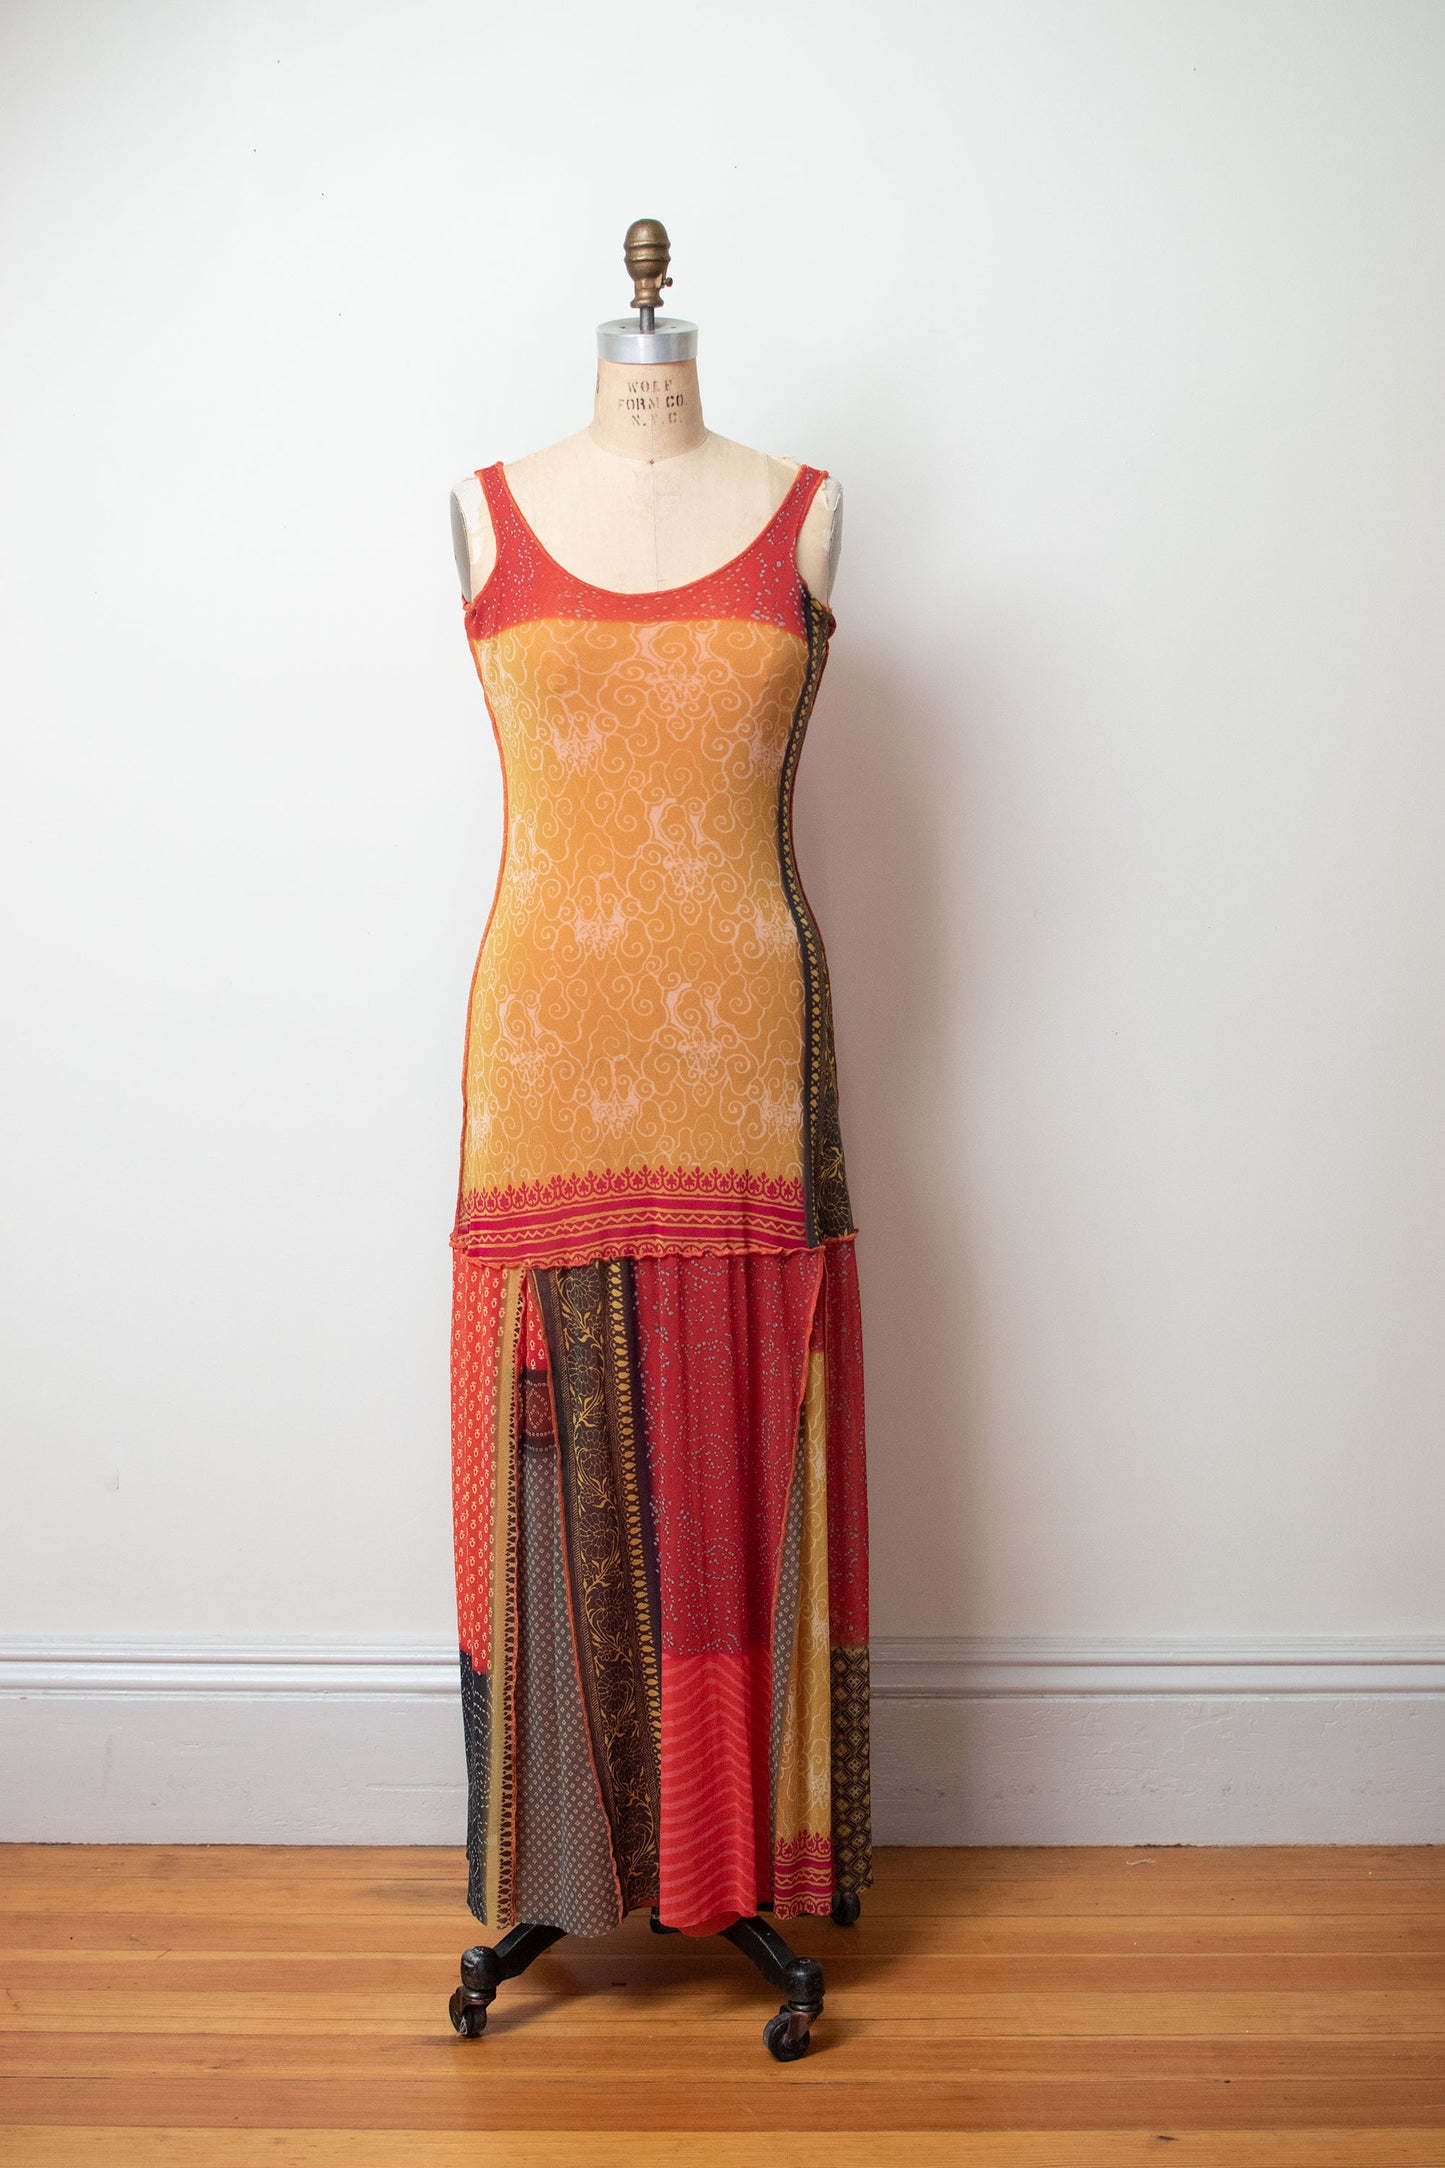 Mixed Print Mesh Dress | Jean Paul Gaultier